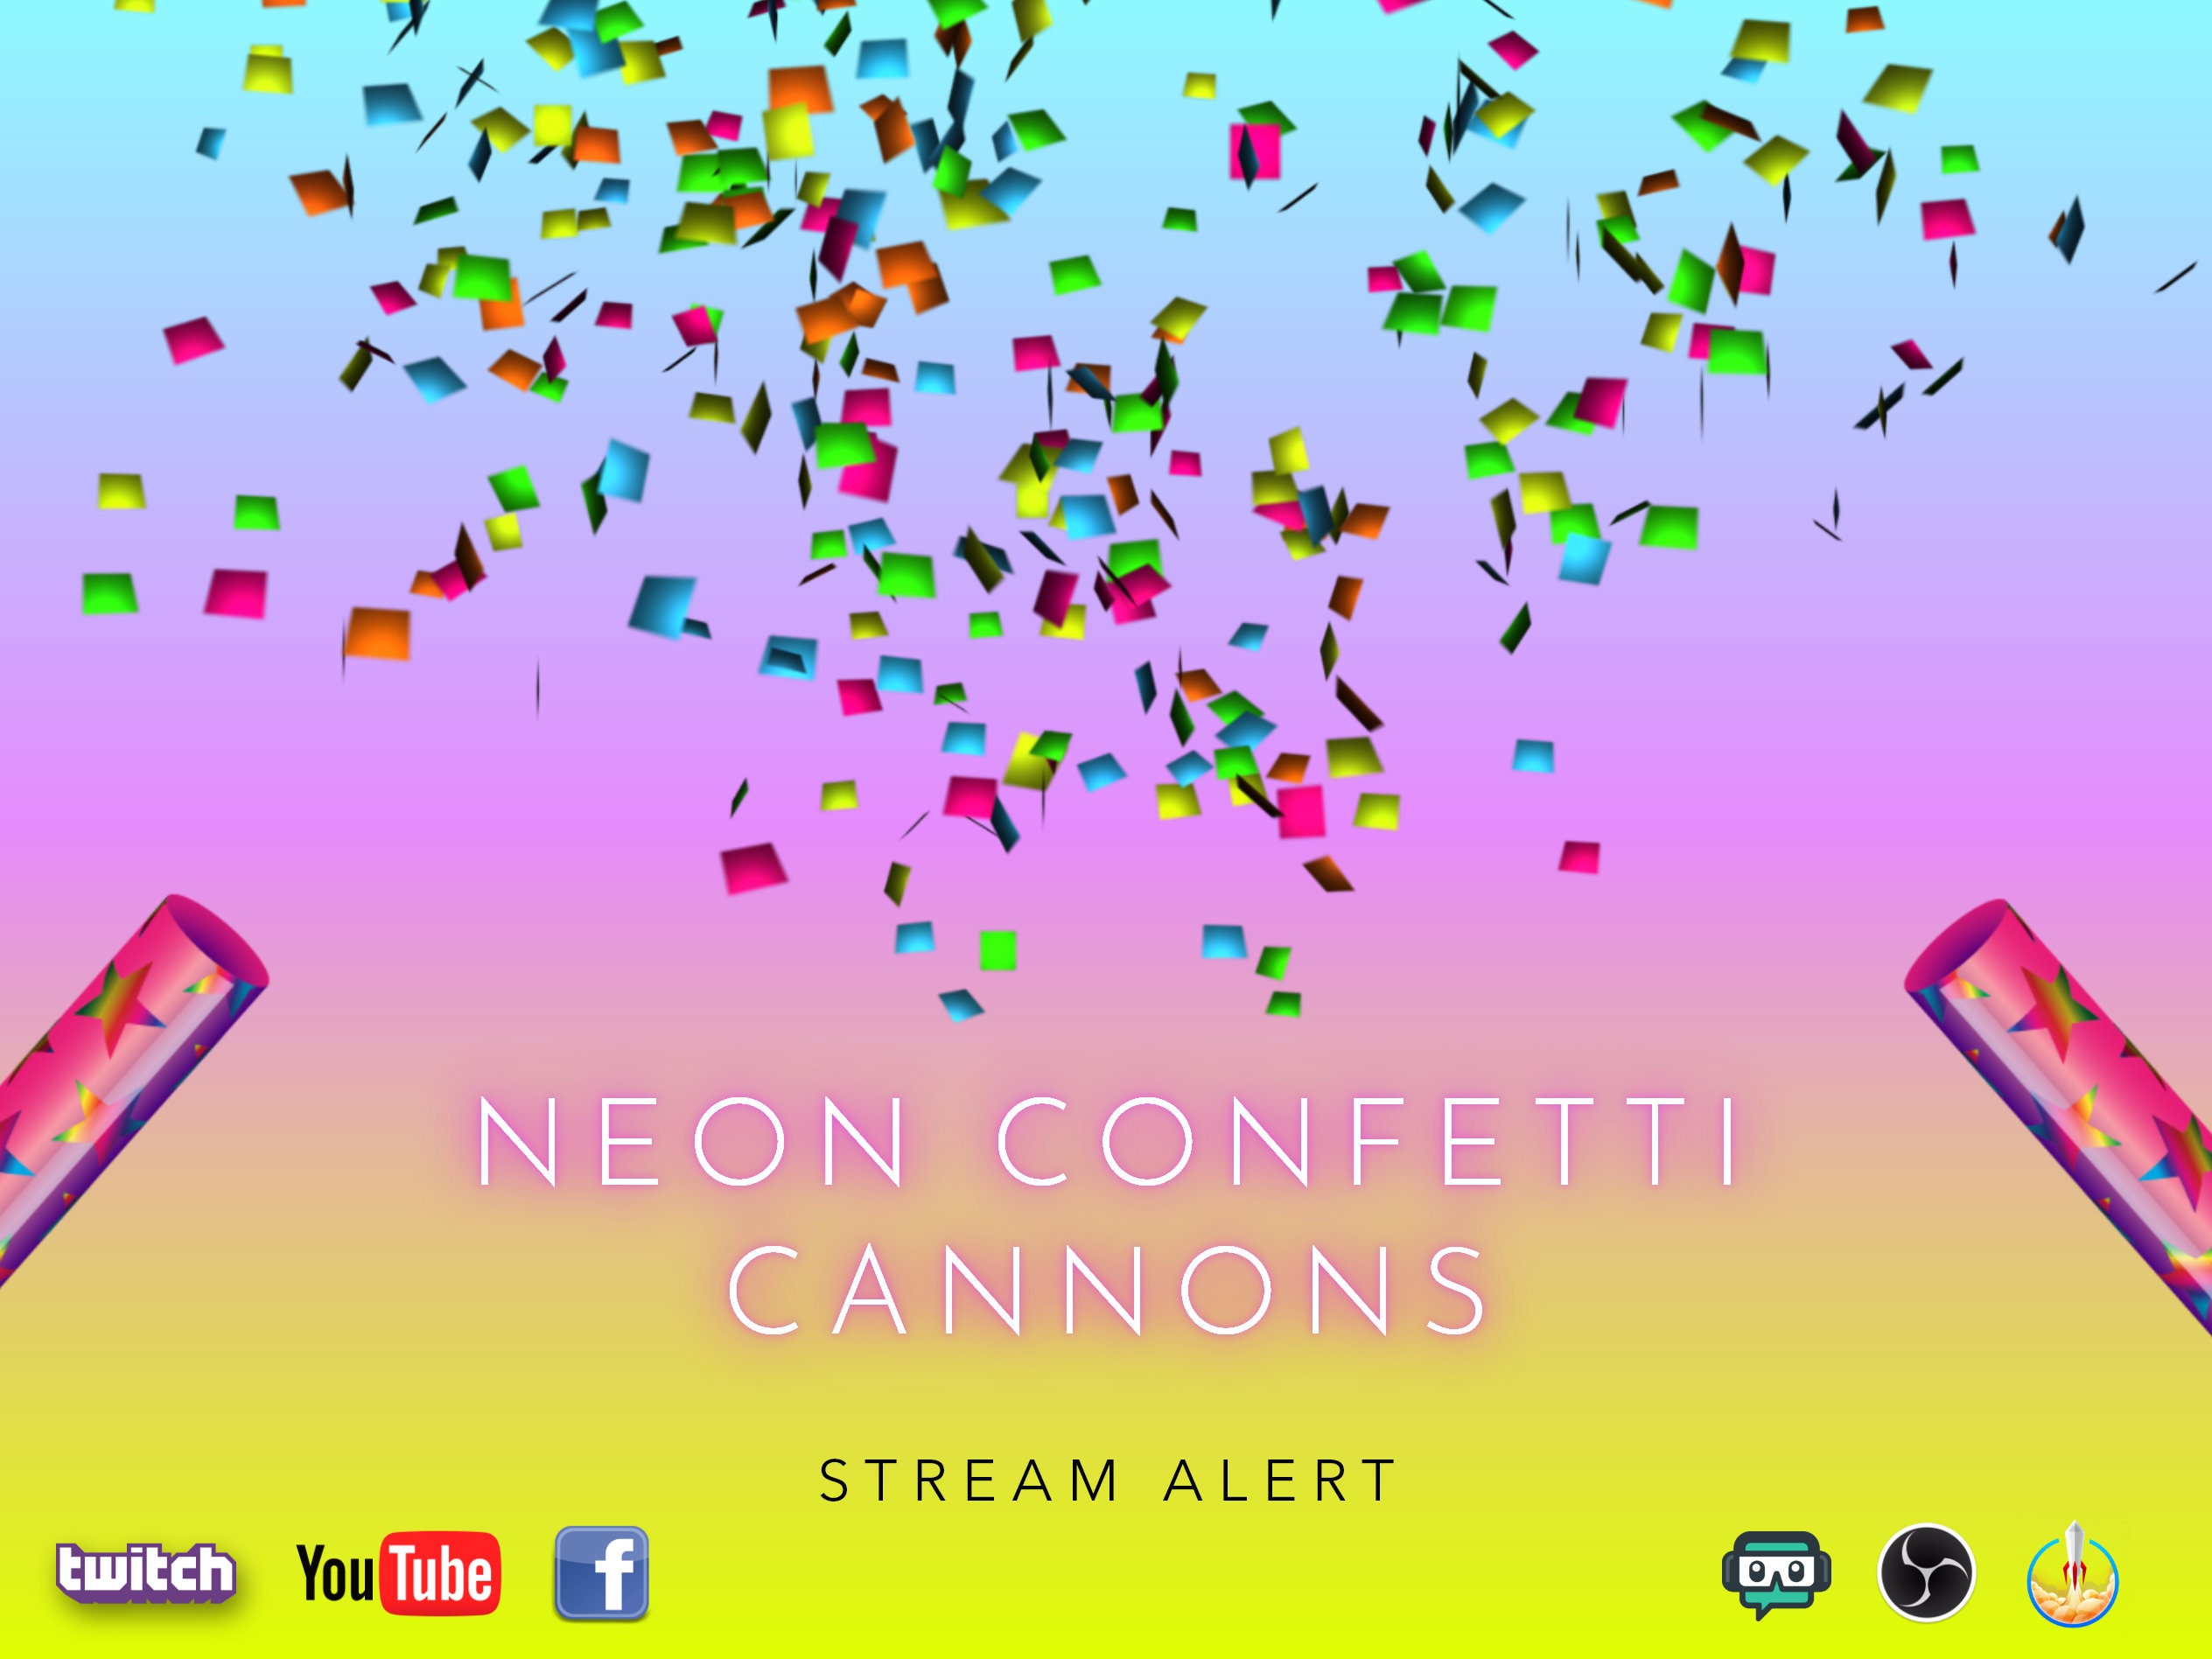 Neon Confetti Cannon